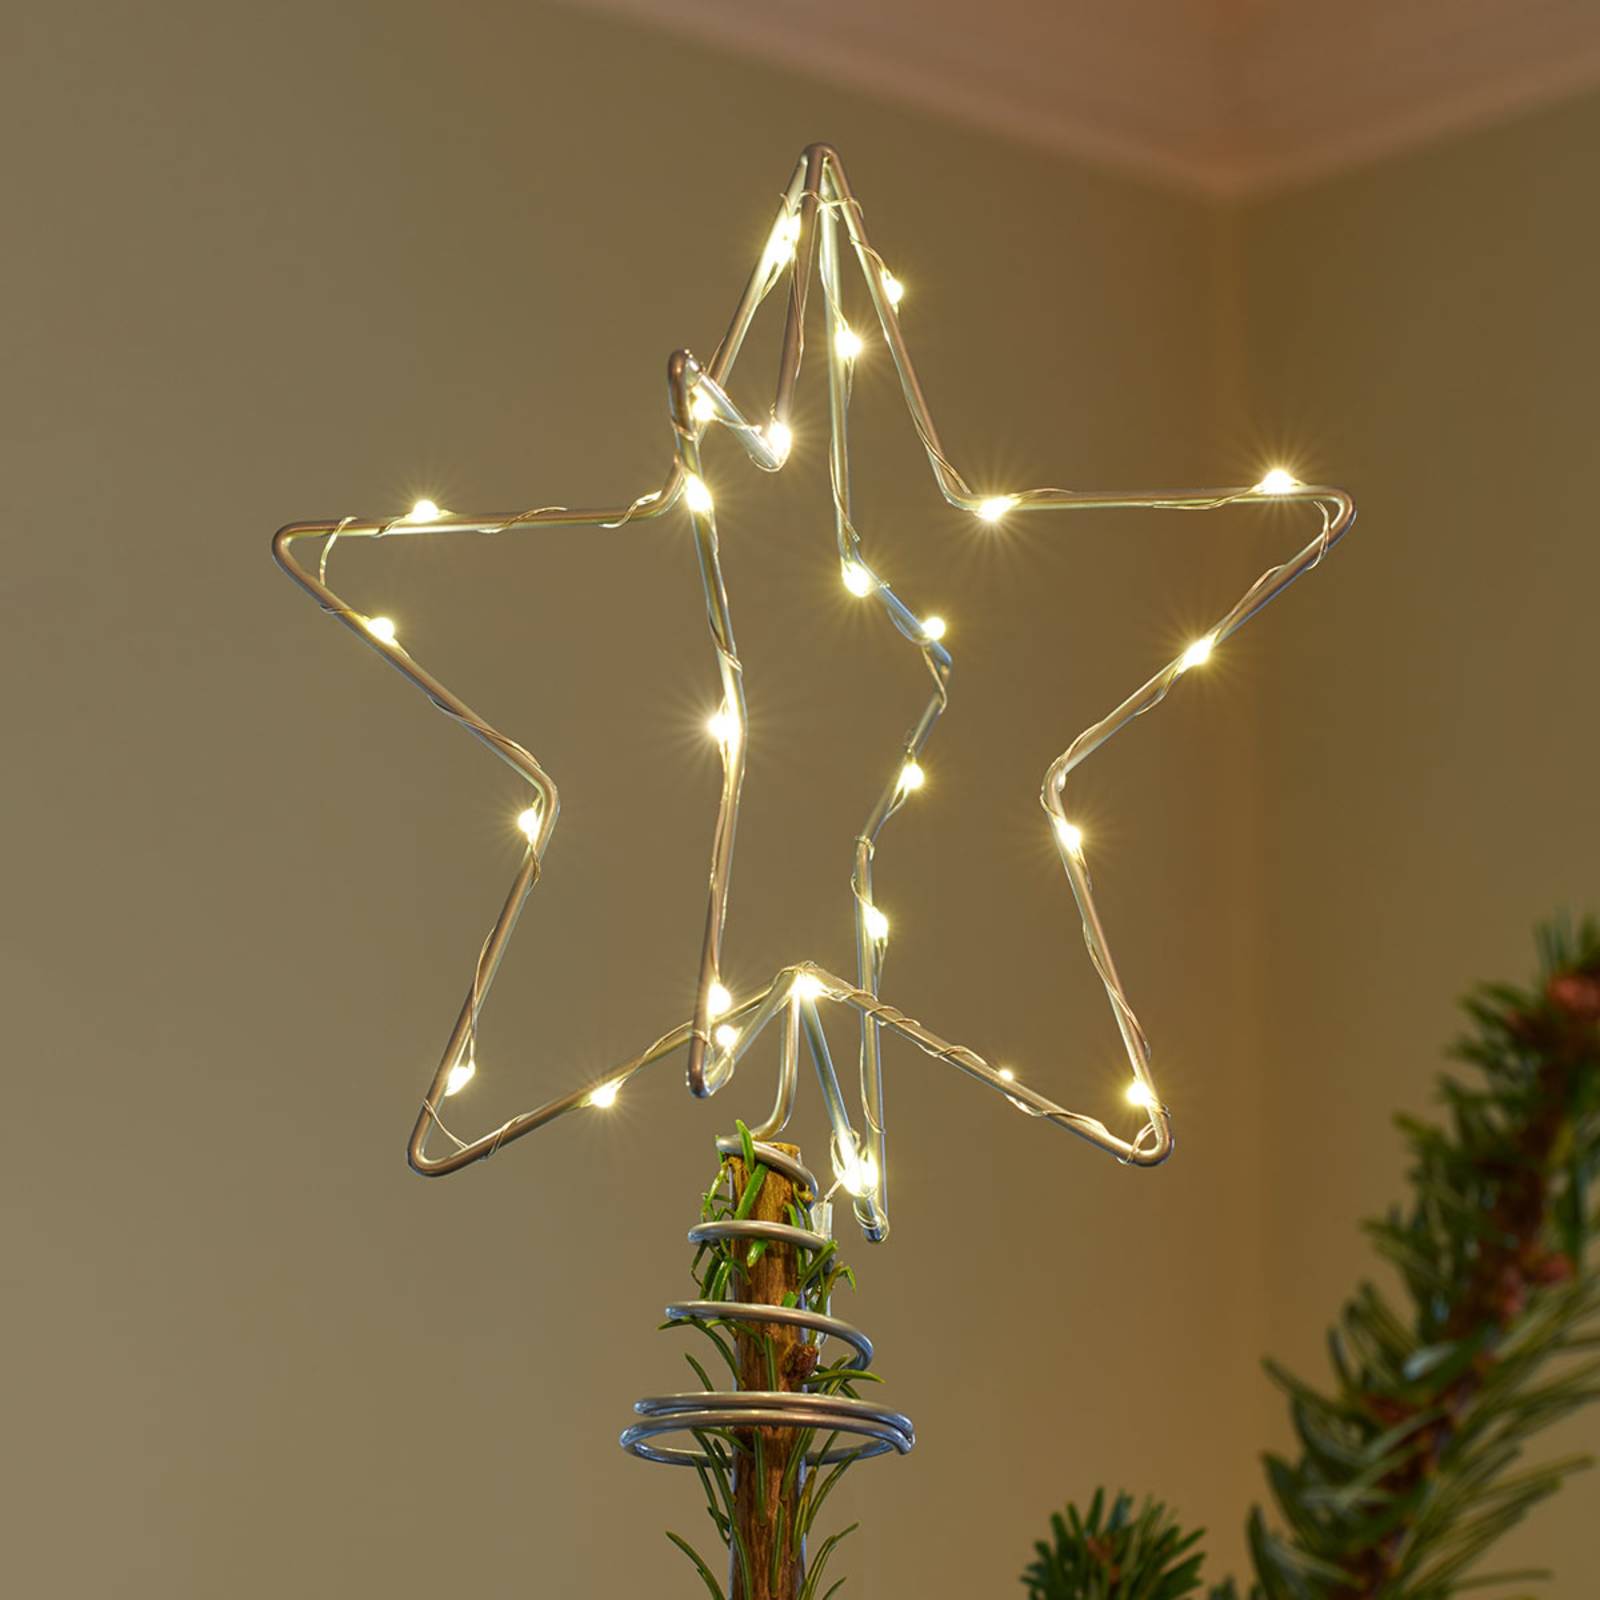 LED dekoratívne svetlo vianočné Top, strieborná